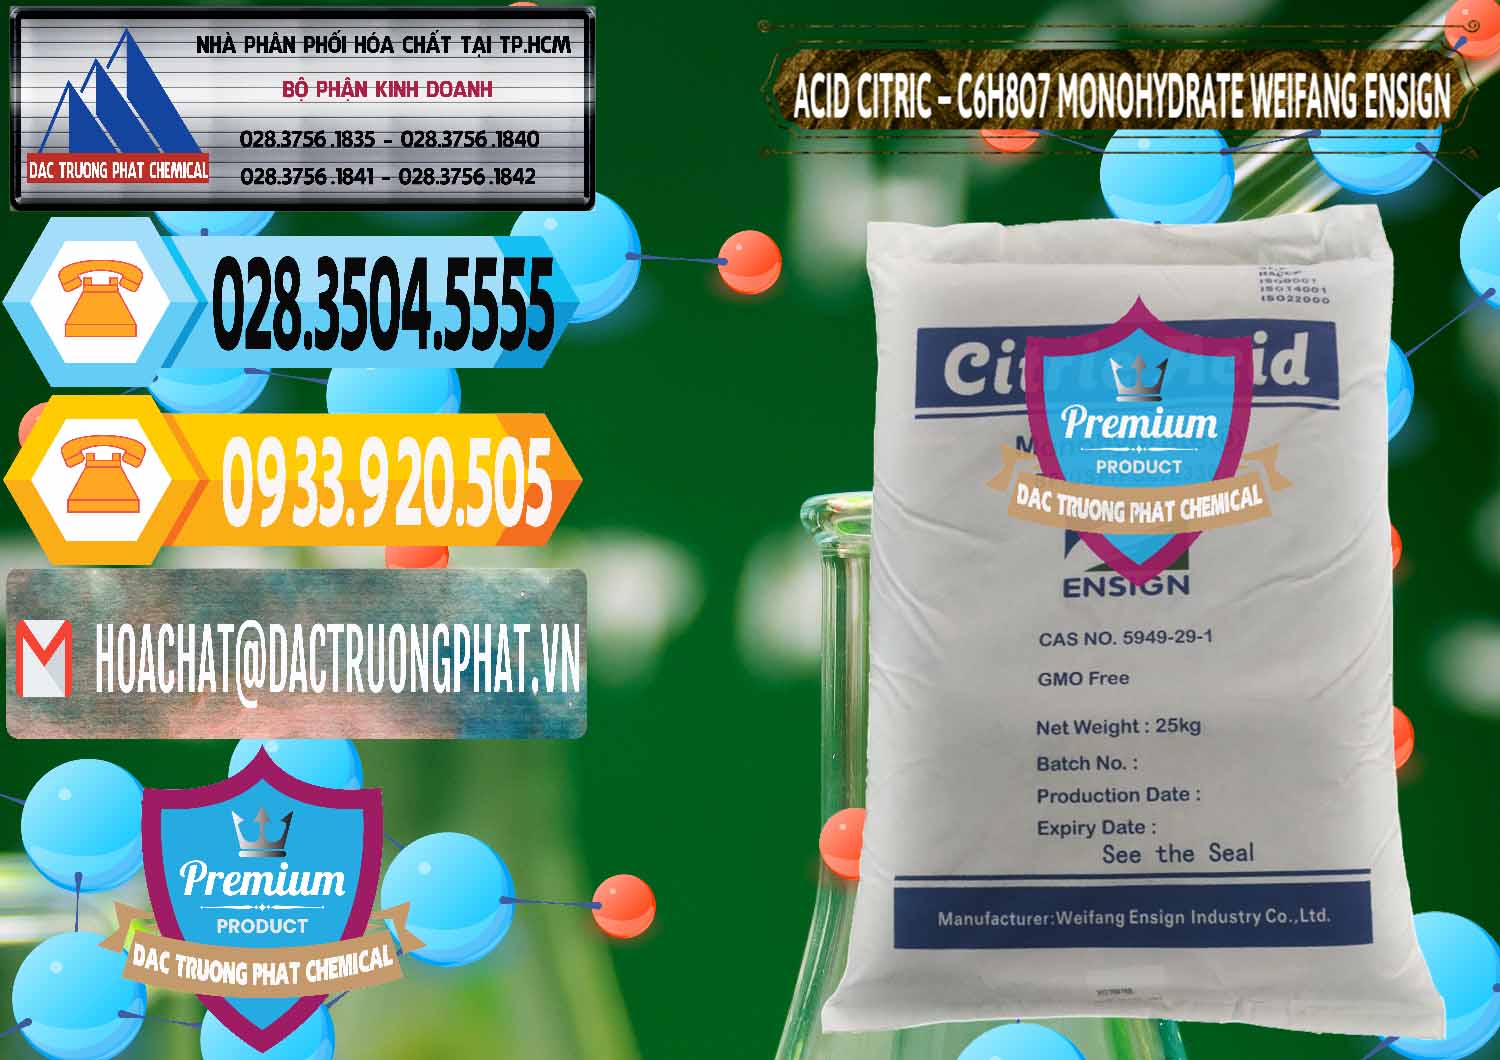 Công ty nhập khẩu - bán Acid Citric - Axit Citric Monohydrate Weifang Trung Quốc China - 0009 - Chuyên phân phối và nhập khẩu hóa chất tại TP.HCM - hoachattayrua.net